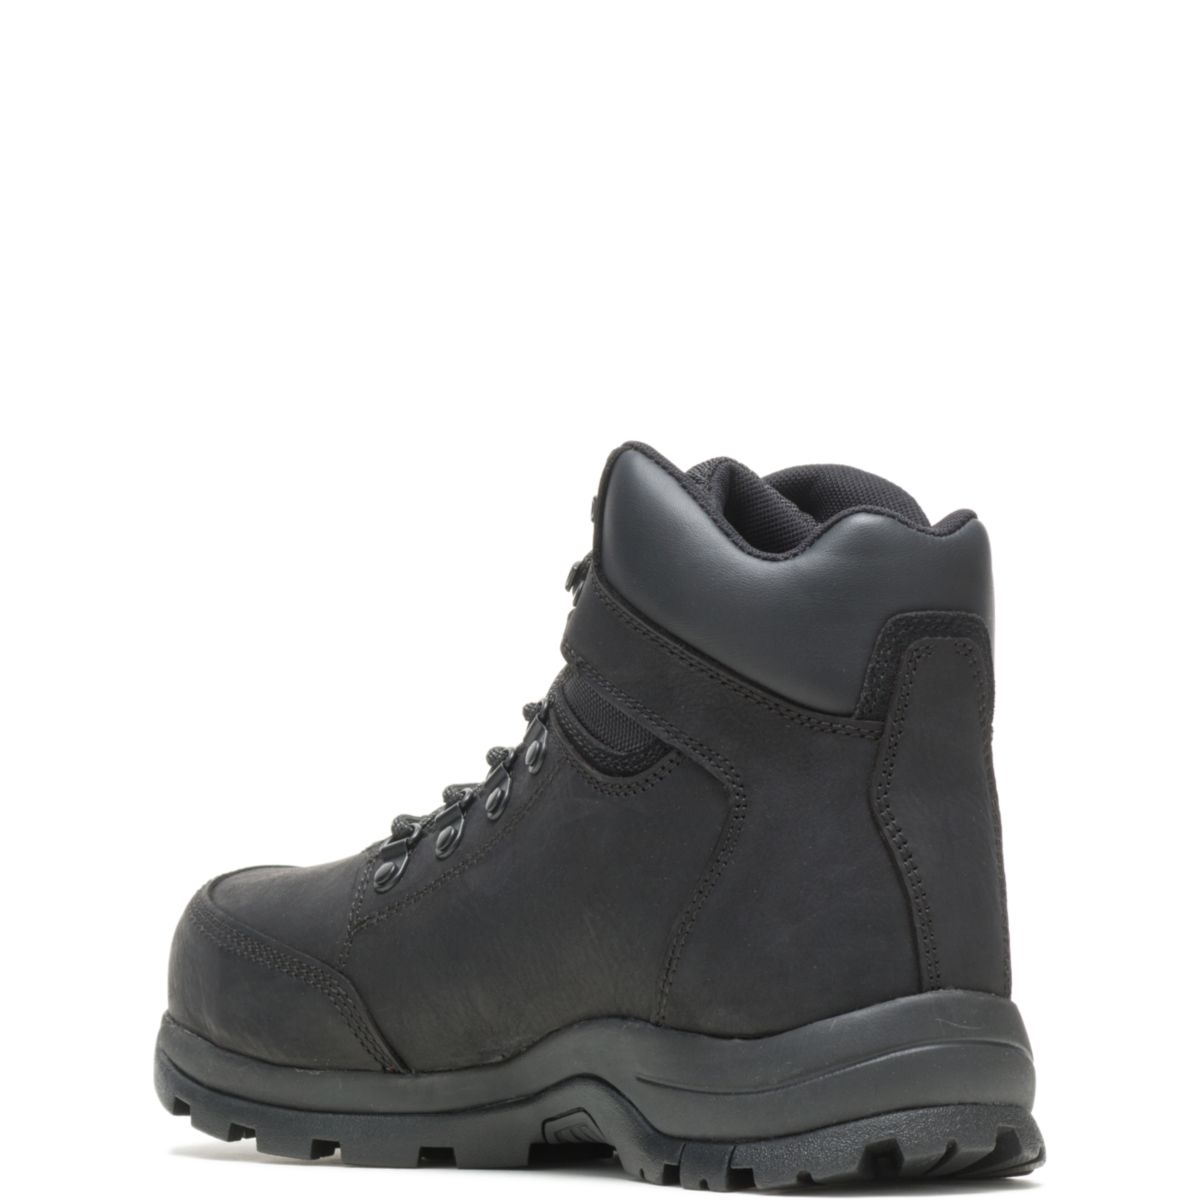 WOLVERINE Men's Grayson Steel Toe Waterproof Work Boot Black - W211042 BLACK - BLACK, 7